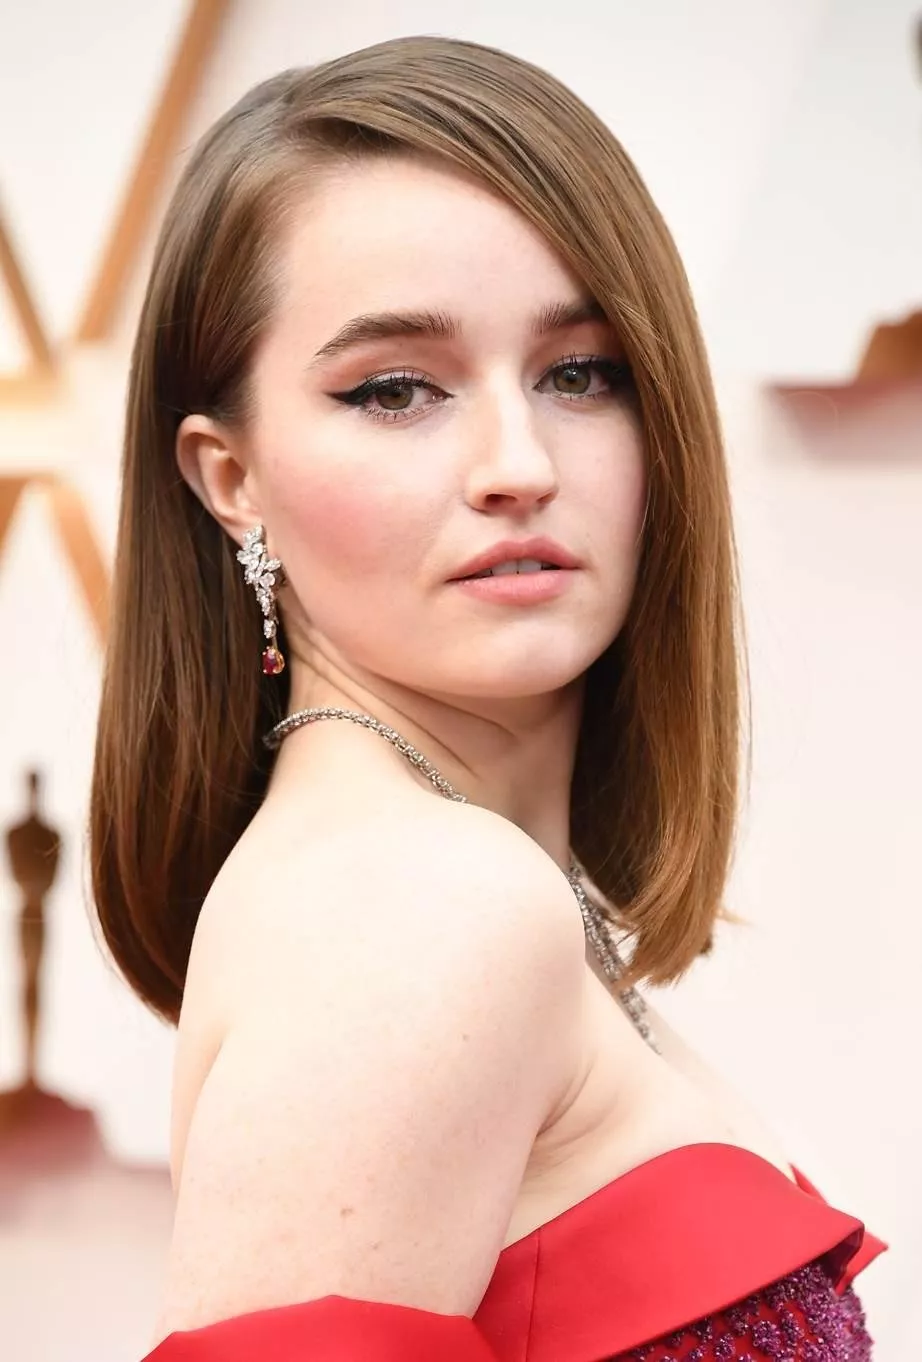 أجمل تسريحات شعر ومكياج النجمات خلال حفل Oscars 2020